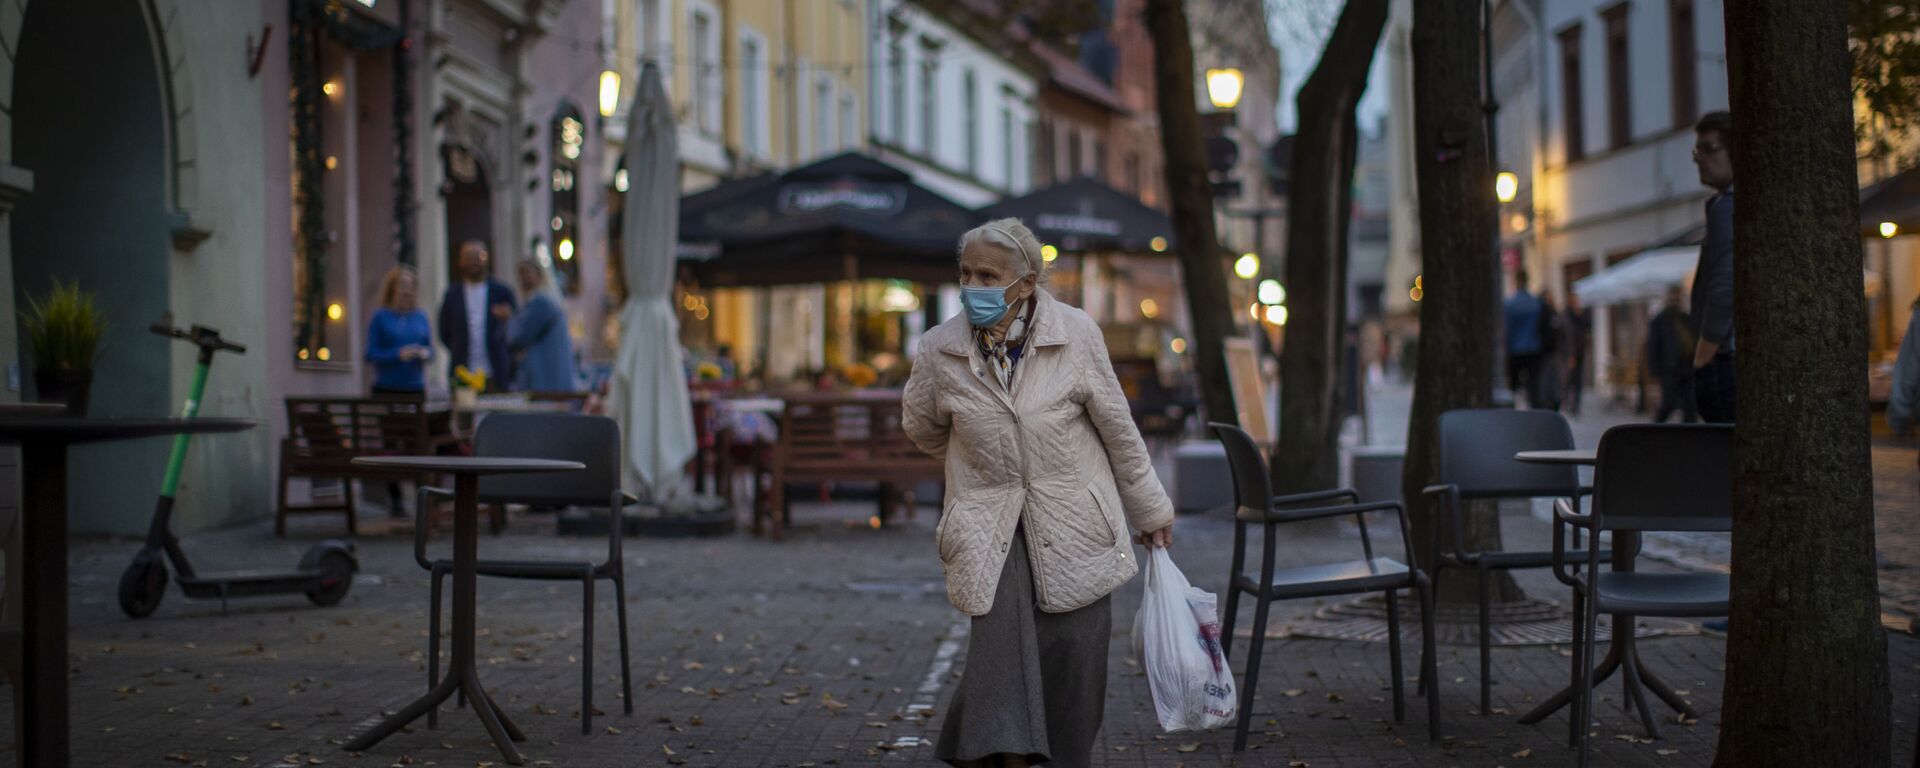 Пожилая женщина в защитной маске - Sputnik Latvija, 1920, 25.03.2021